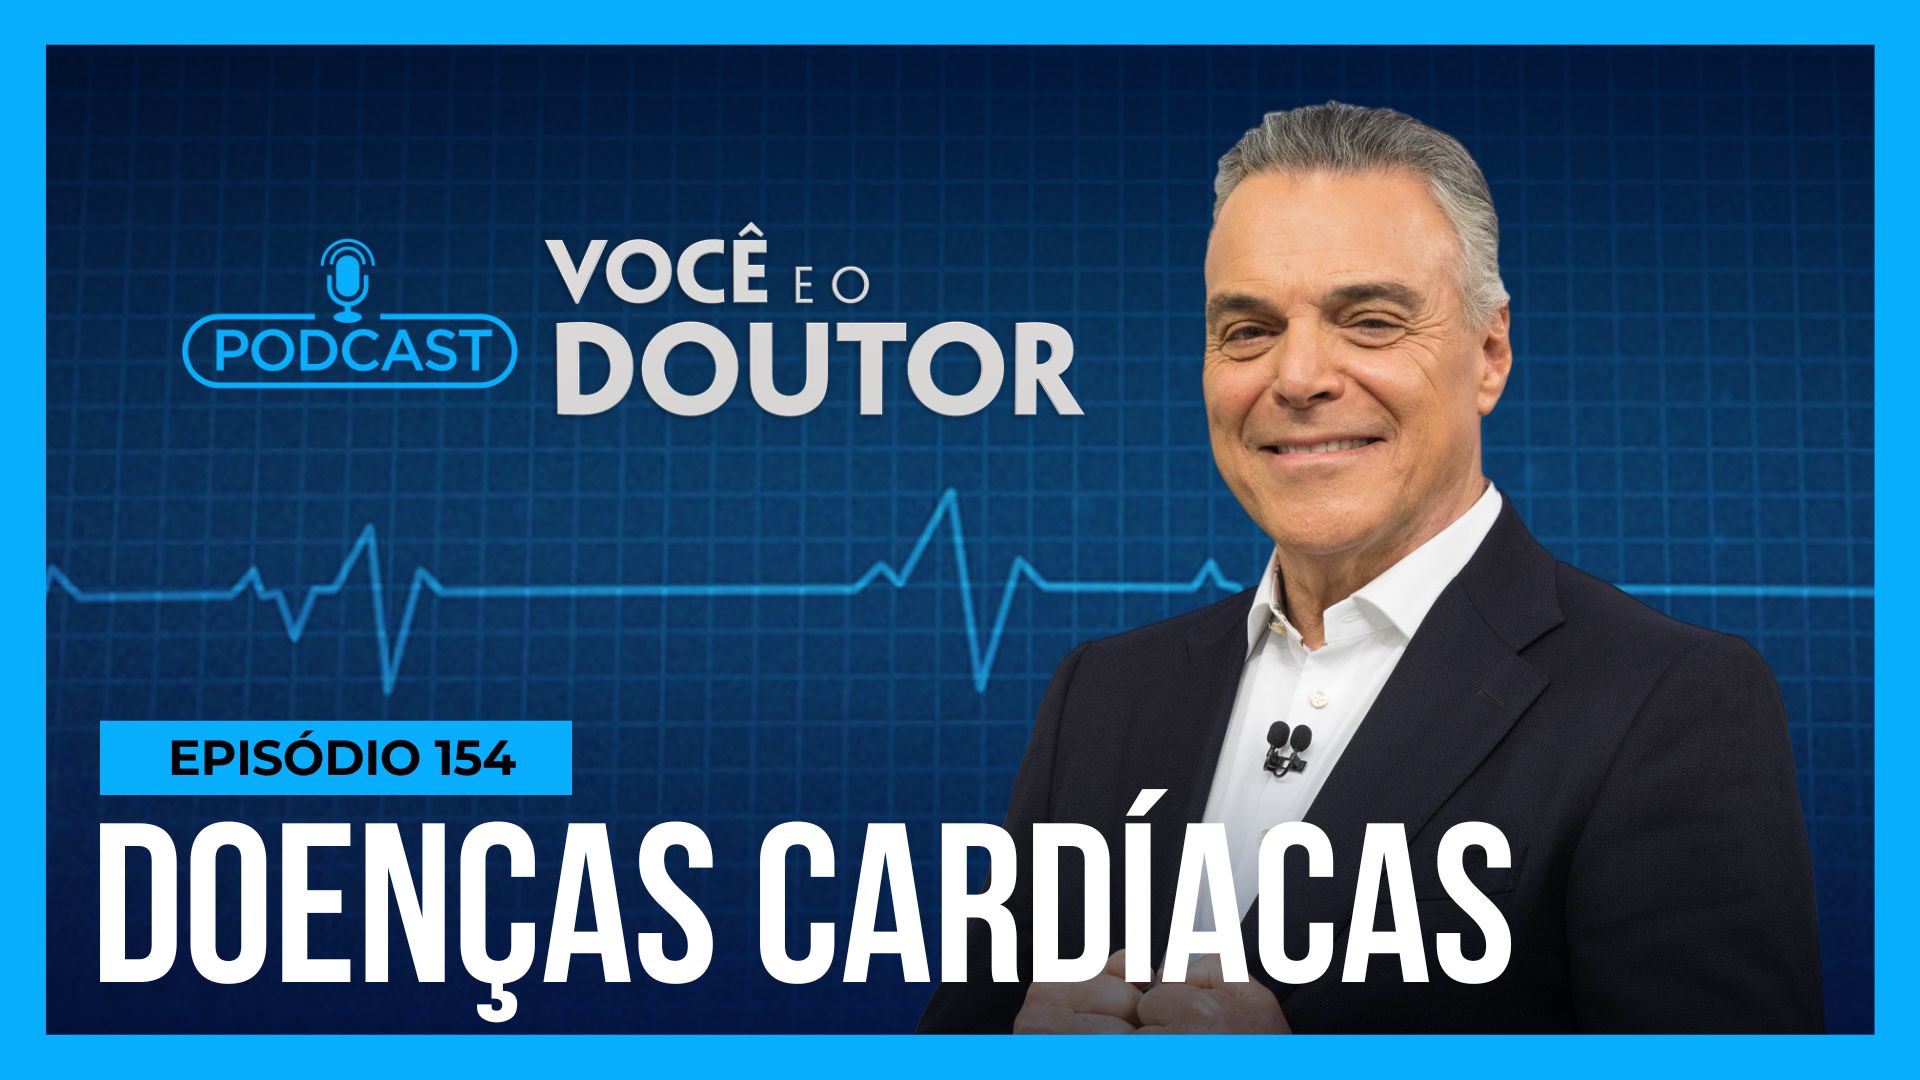 Vídeo: Podcast Você e o Doutor: doenças cardíacas matam 350 mil pessoas por ano no Brasil